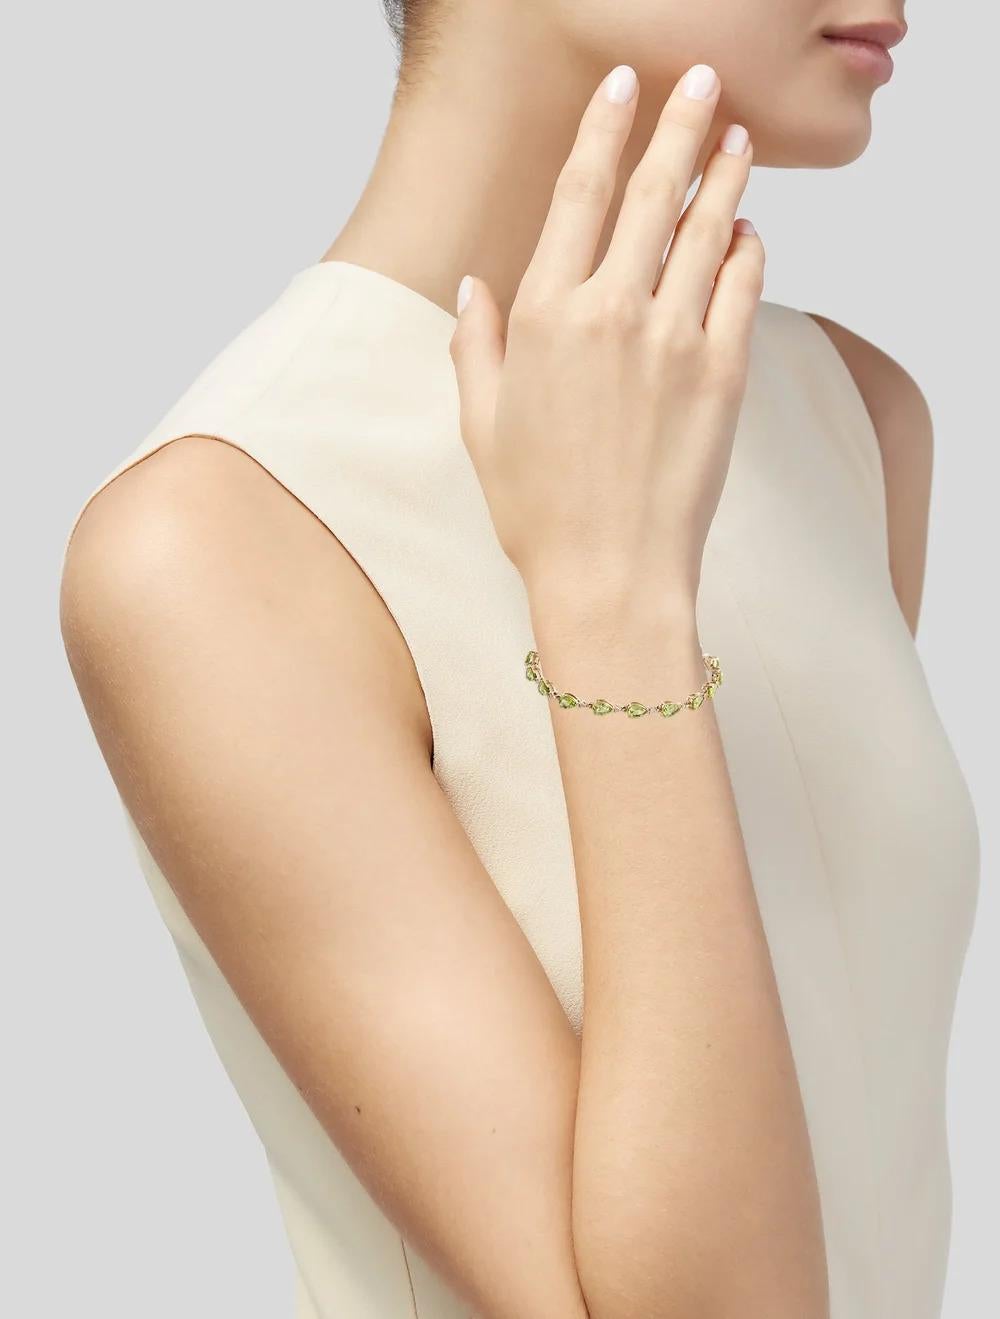 Rehaussez votre poignet avec cet exquis bracelet à maillons en or jaune 14 carats, orné de péridots brillants modifiés en poire et de diamants étincelants. Fabriquée avec précision, cette pièce intemporelle respire l'élégance et la